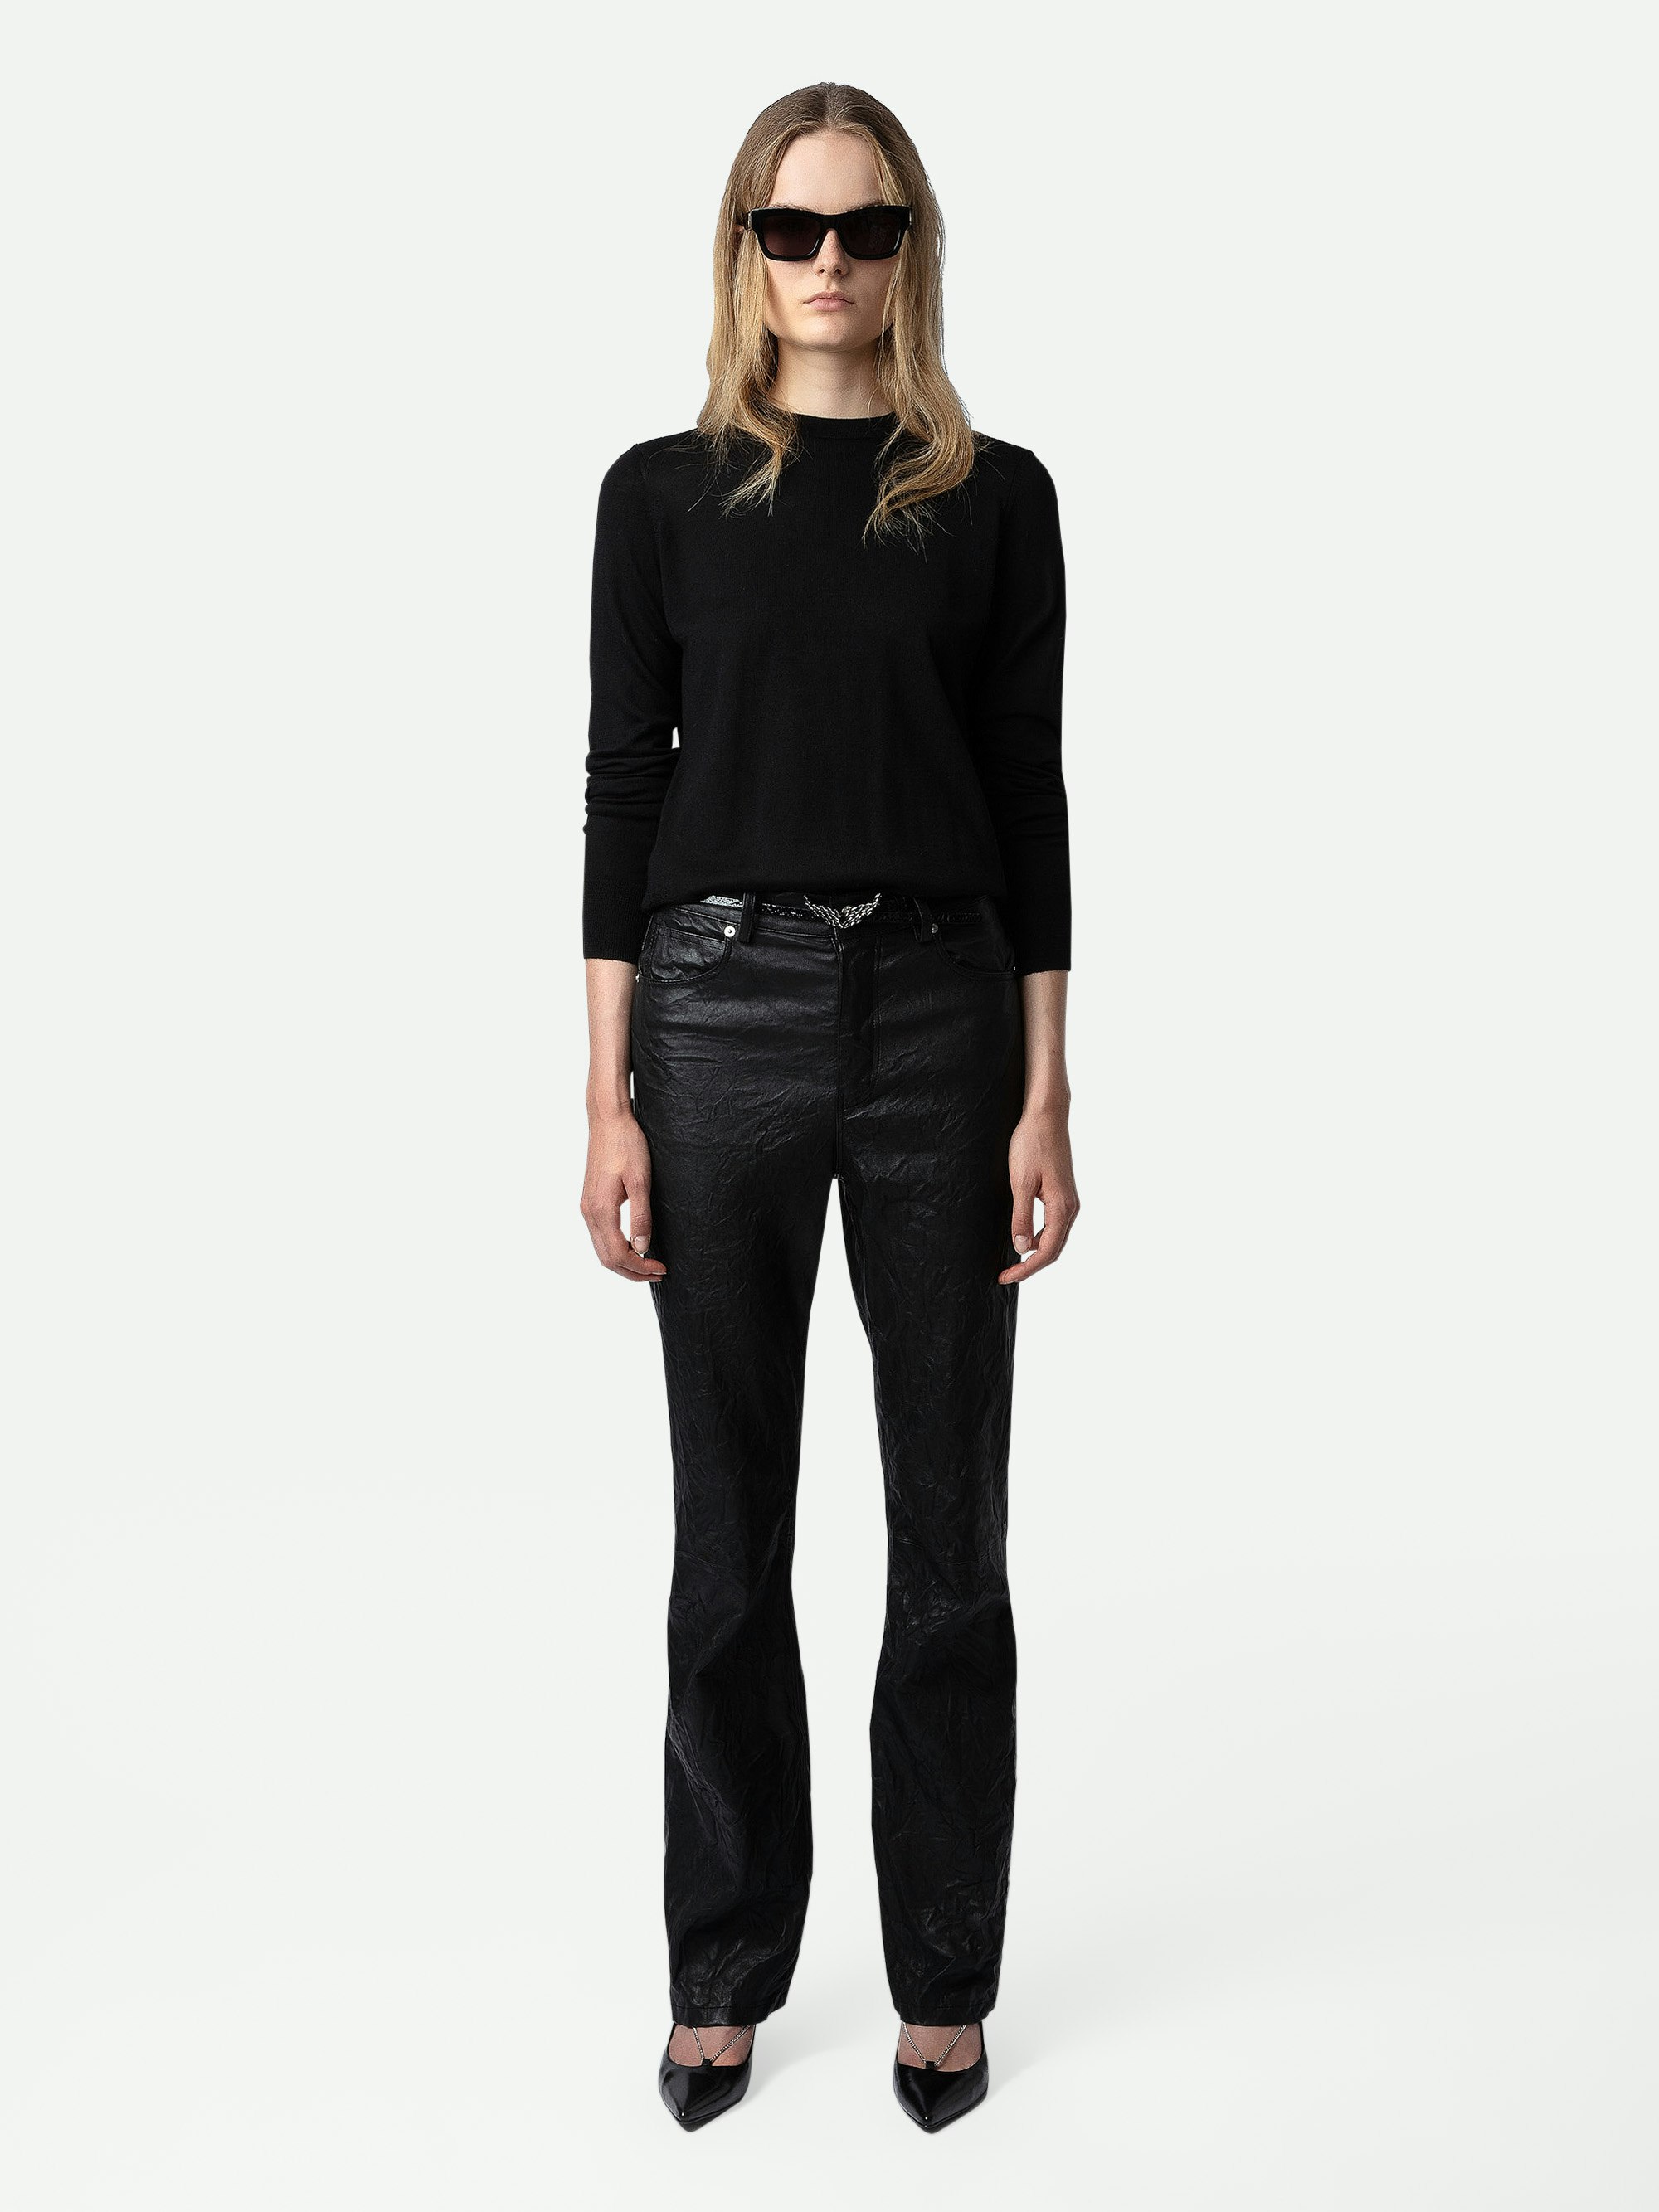 Maglione Emma 100% Lana Merino - Maglione in 100% lana merino nero girocollo con maniche lunghe e schiena incrociata aperta.